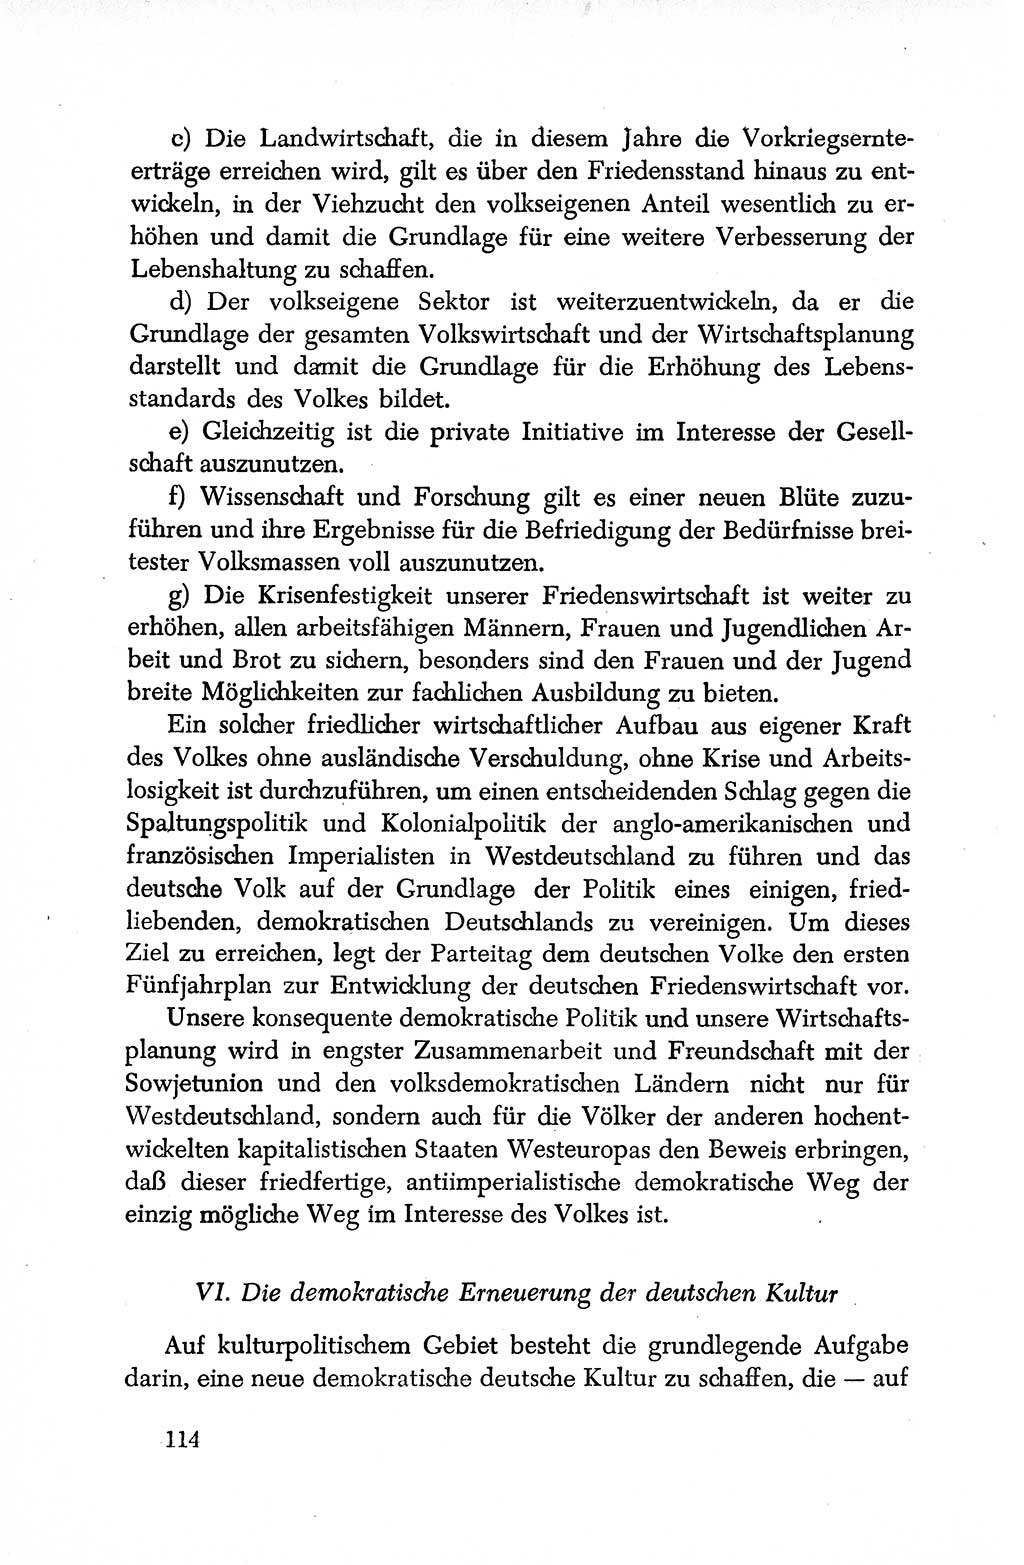 Dokumente der Sozialistischen Einheitspartei Deutschlands (SED) [Deutsche Demokratische Republik (DDR)] 1950-1952, Seite 114 (Dok. SED DDR 1950-1952, S. 114)